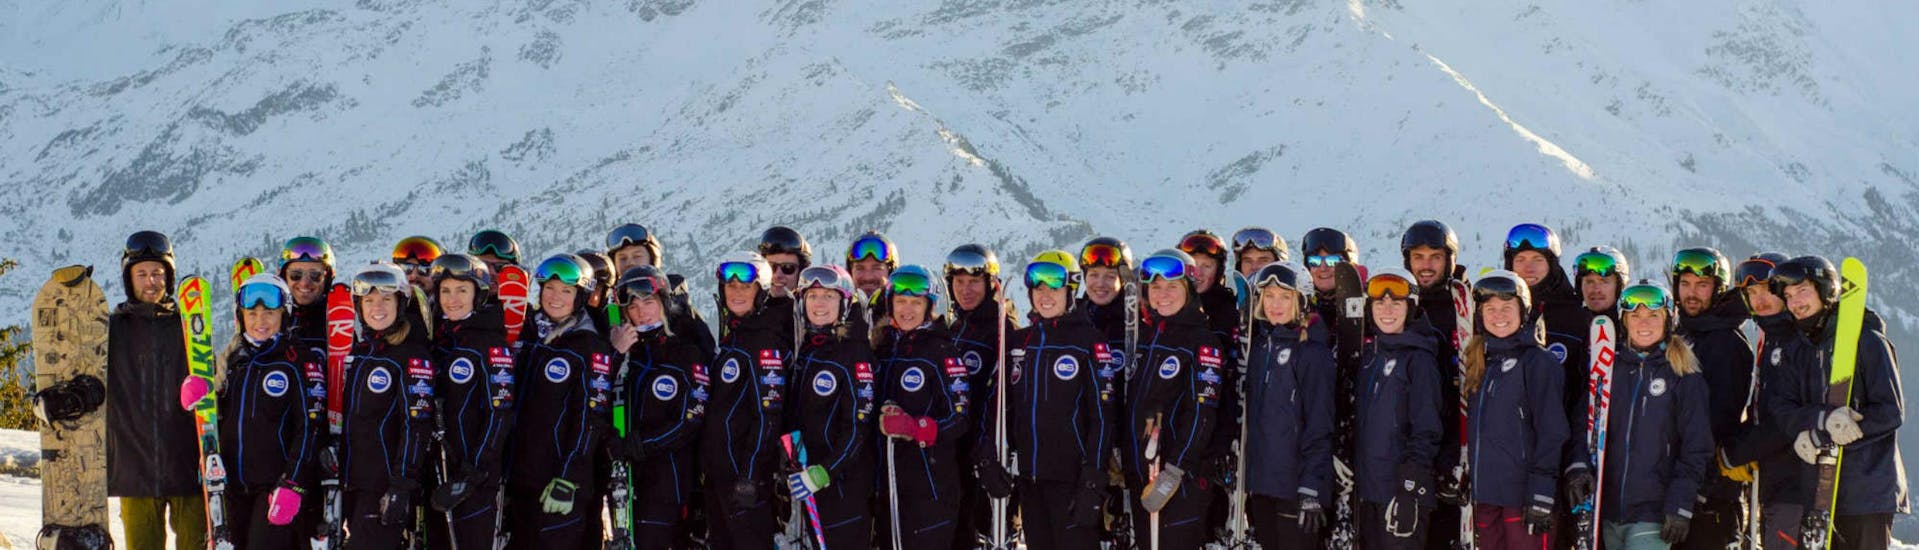 Les moniteurs de ski de l'école de ski European Snowsport Chamonix posent côte à côte au sommet de l'une des nombreuses pistes skiables de la station de ski de Chamonix.